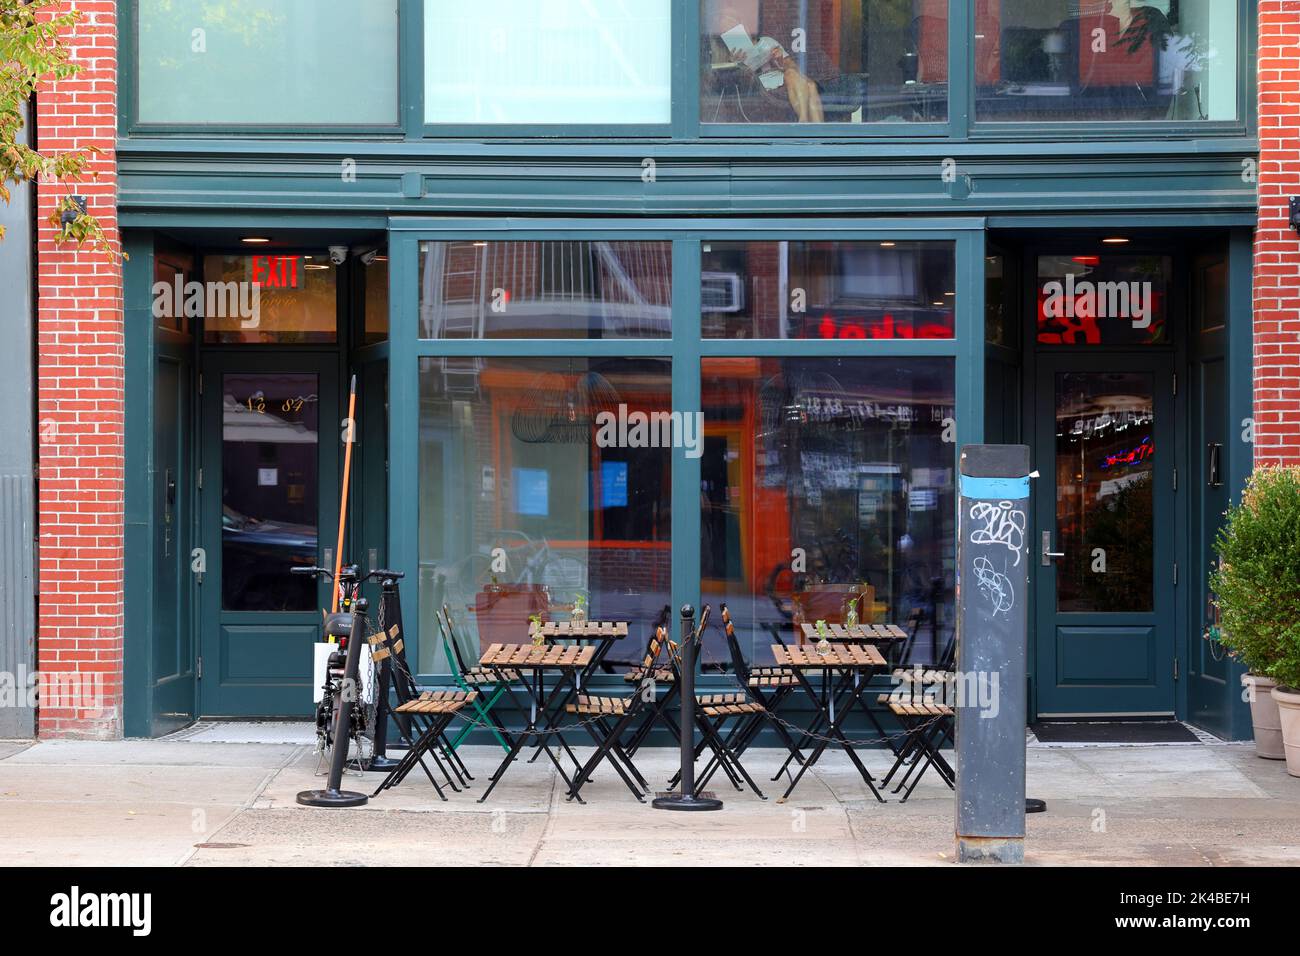 Nai, 84 2. Ave, New York, NYC Foto von einem spanischen Tapas-Restaurant im East Village-Viertel in Manhattan. Stockfoto